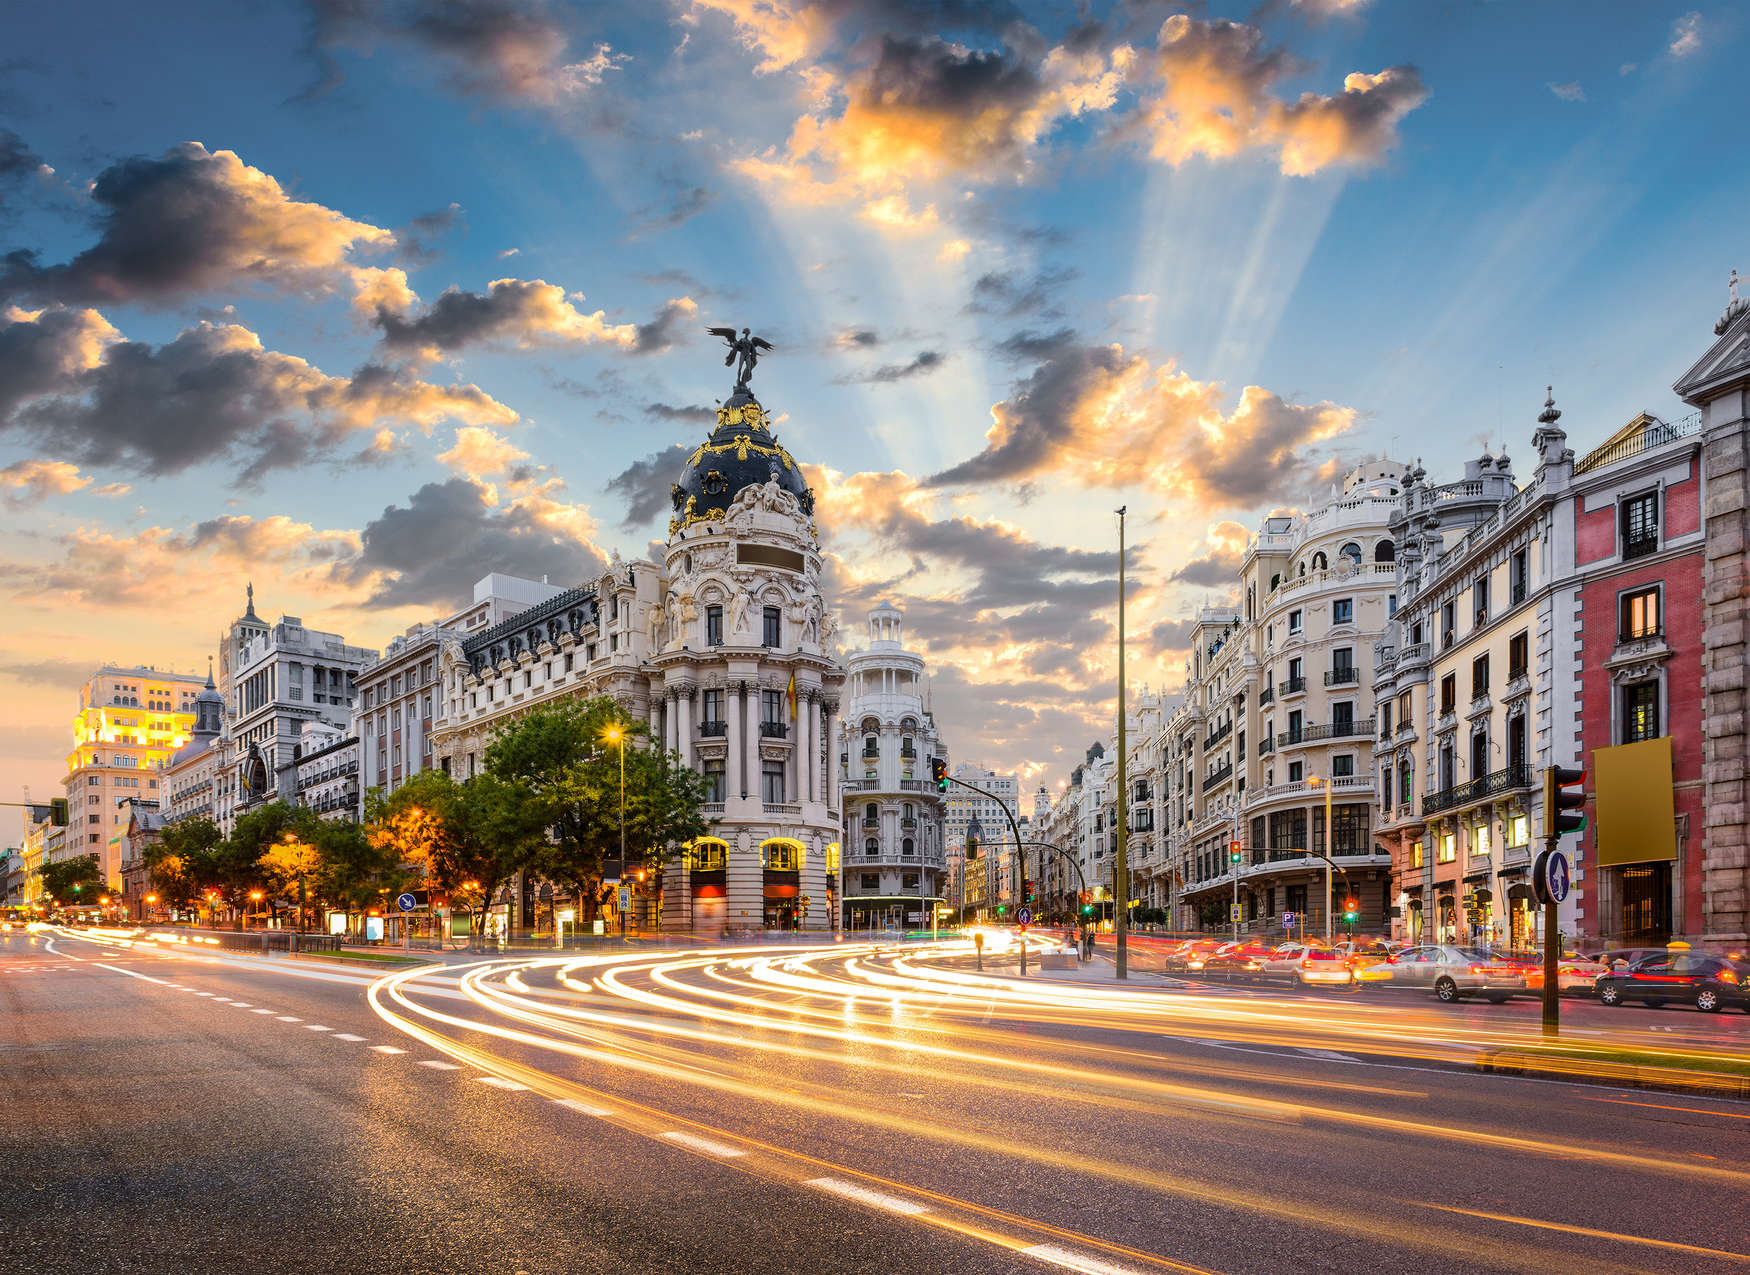             Madrids Straßen am Morgen – Blau, Grau, Weiß
        